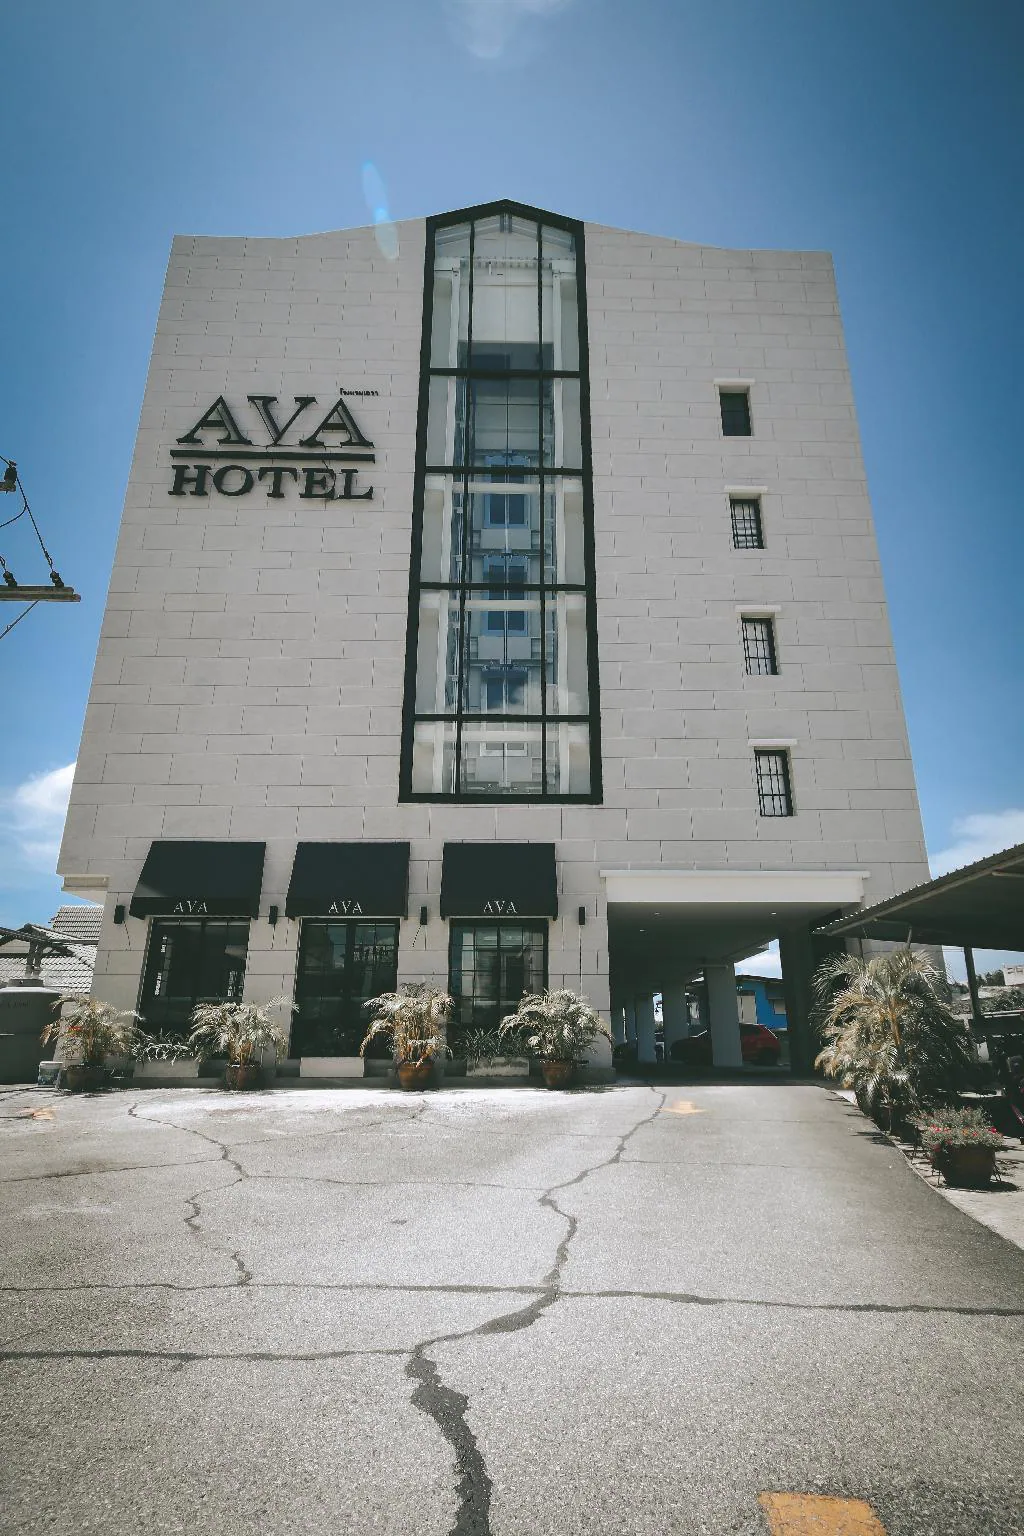 โรงแรมเอวา
(AVA Hotel)